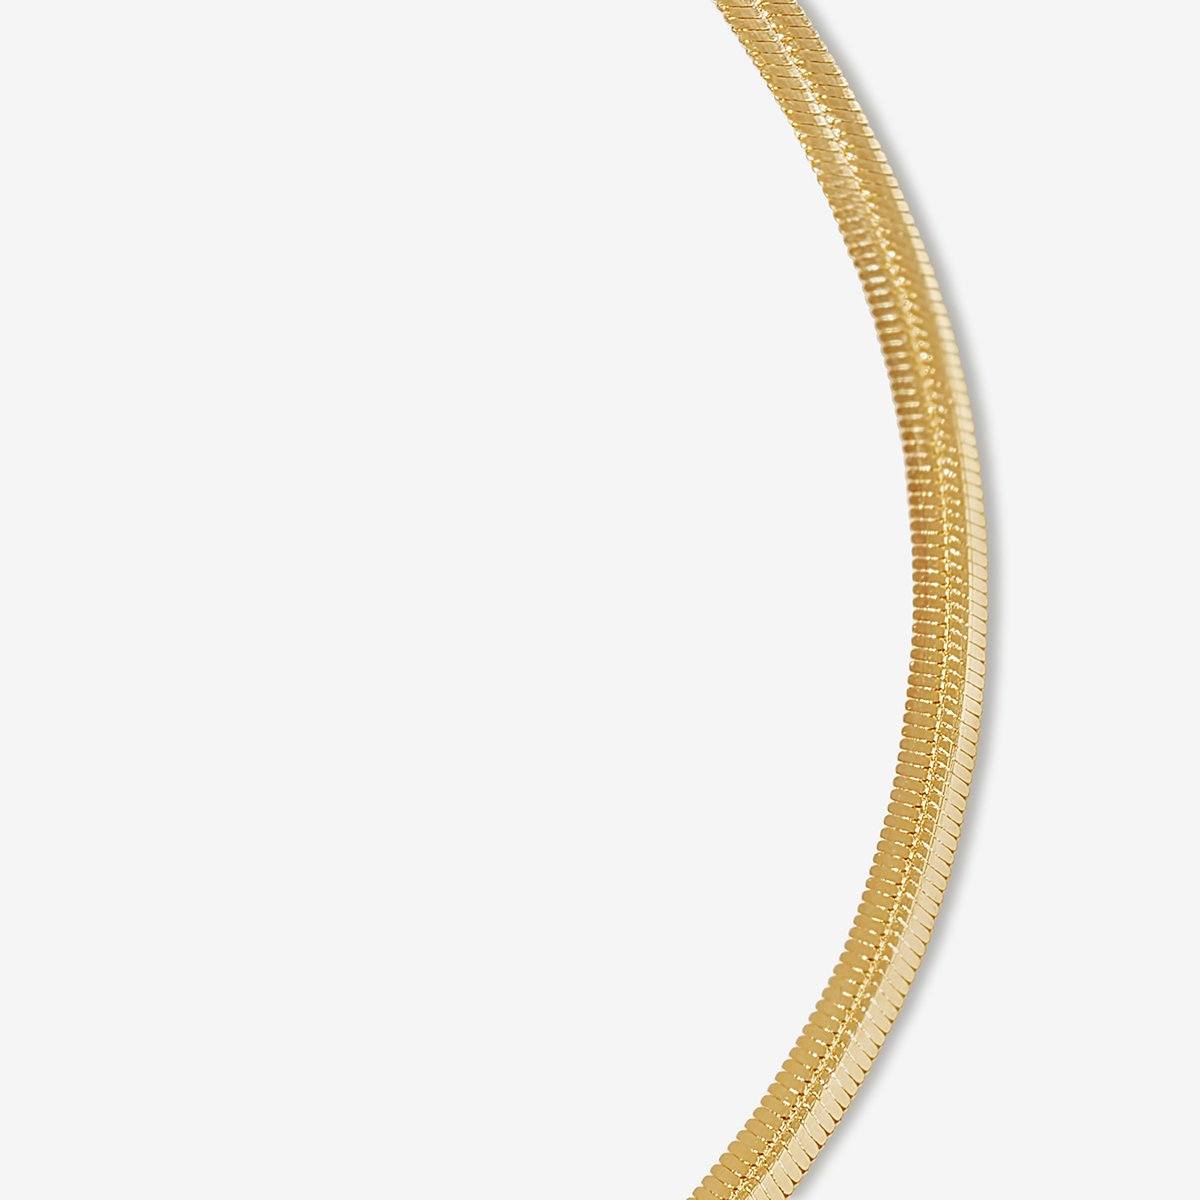 14K Solid Yellow Gold Snake Chain Bracelet for Women